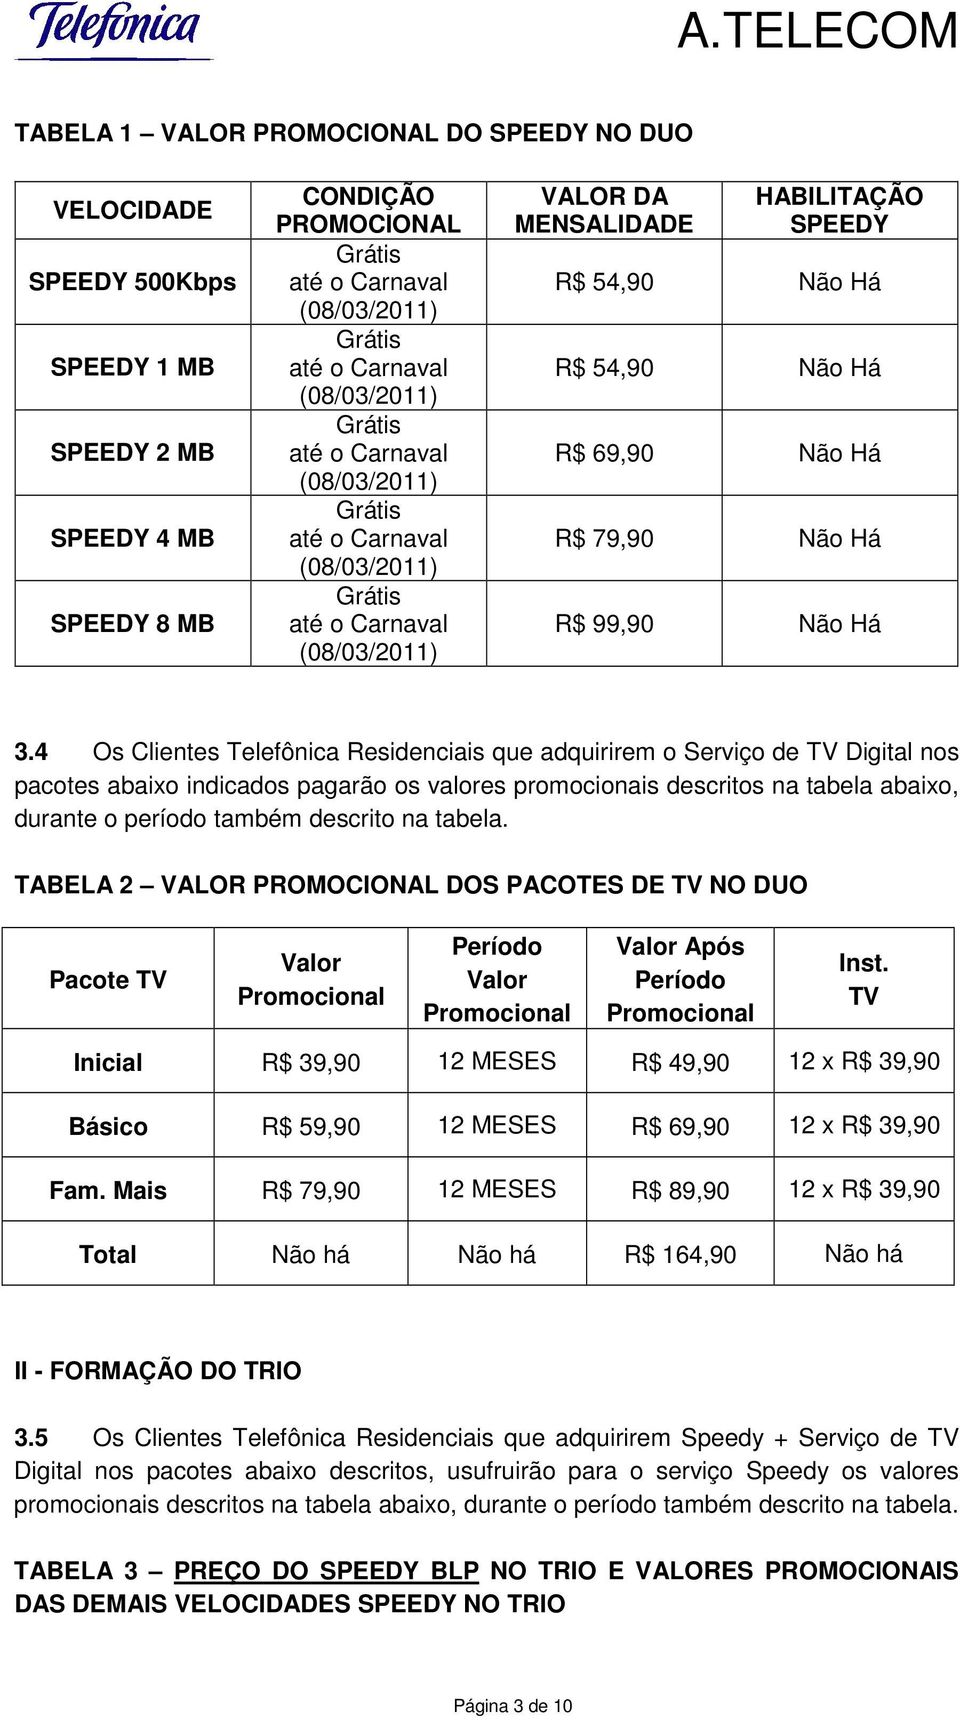 4 Os Clientes Telefônica Residenciais que adquirirem o Serviço de TV Digital nos pacotes abaixo indicados pagarão os valores promocionais descritos na tabela abaixo, durante o período também descrito